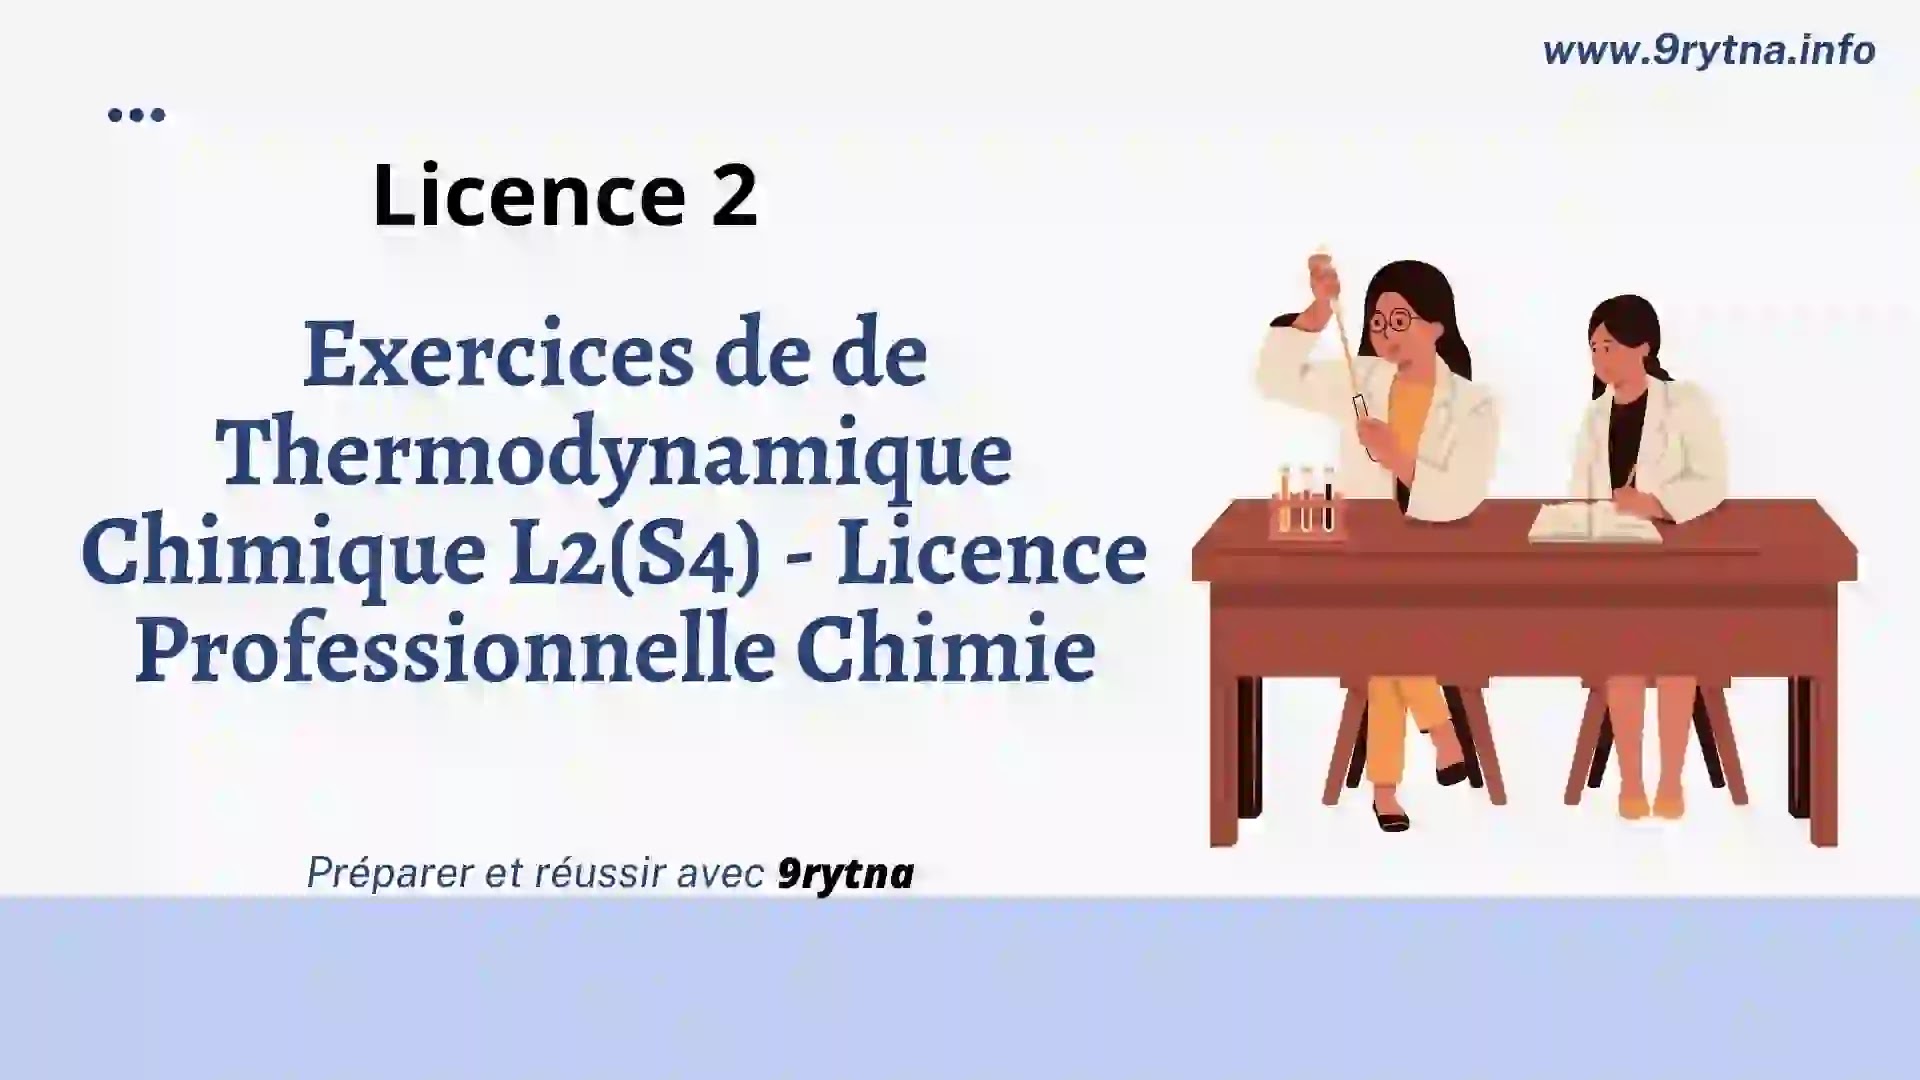 Exercices de de Thermodynamique Chimique L2(S4) - Licence Professionnelle Chimie